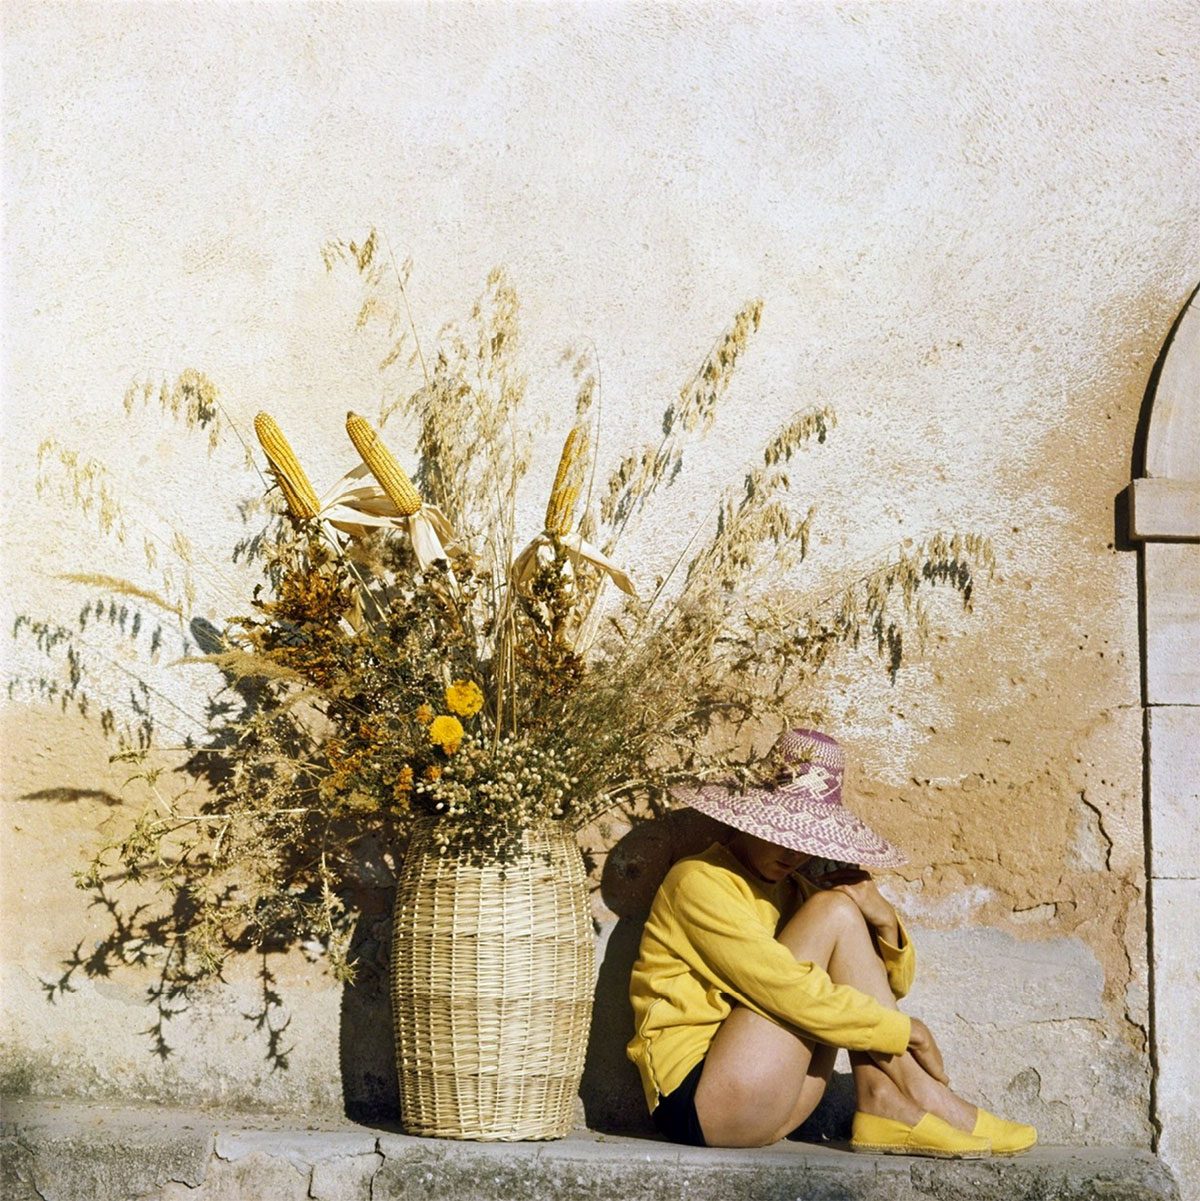 Florette in Piozzo, Italy, 1960